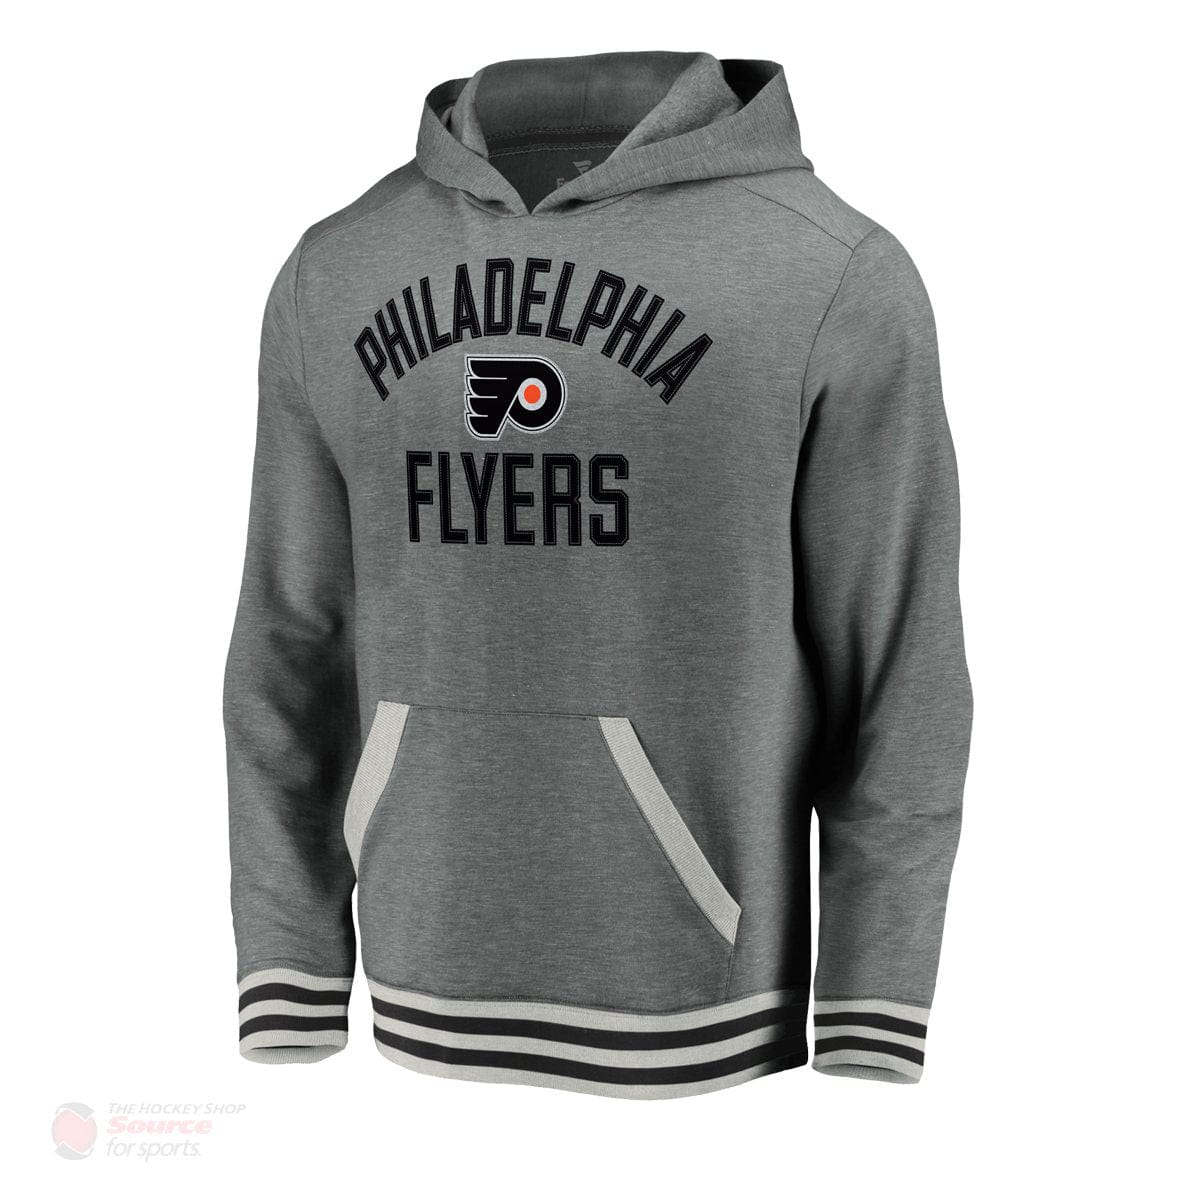 Philadelphia Flyers Fanatics Upperclassmen Vintage Pullover Mens Hoody